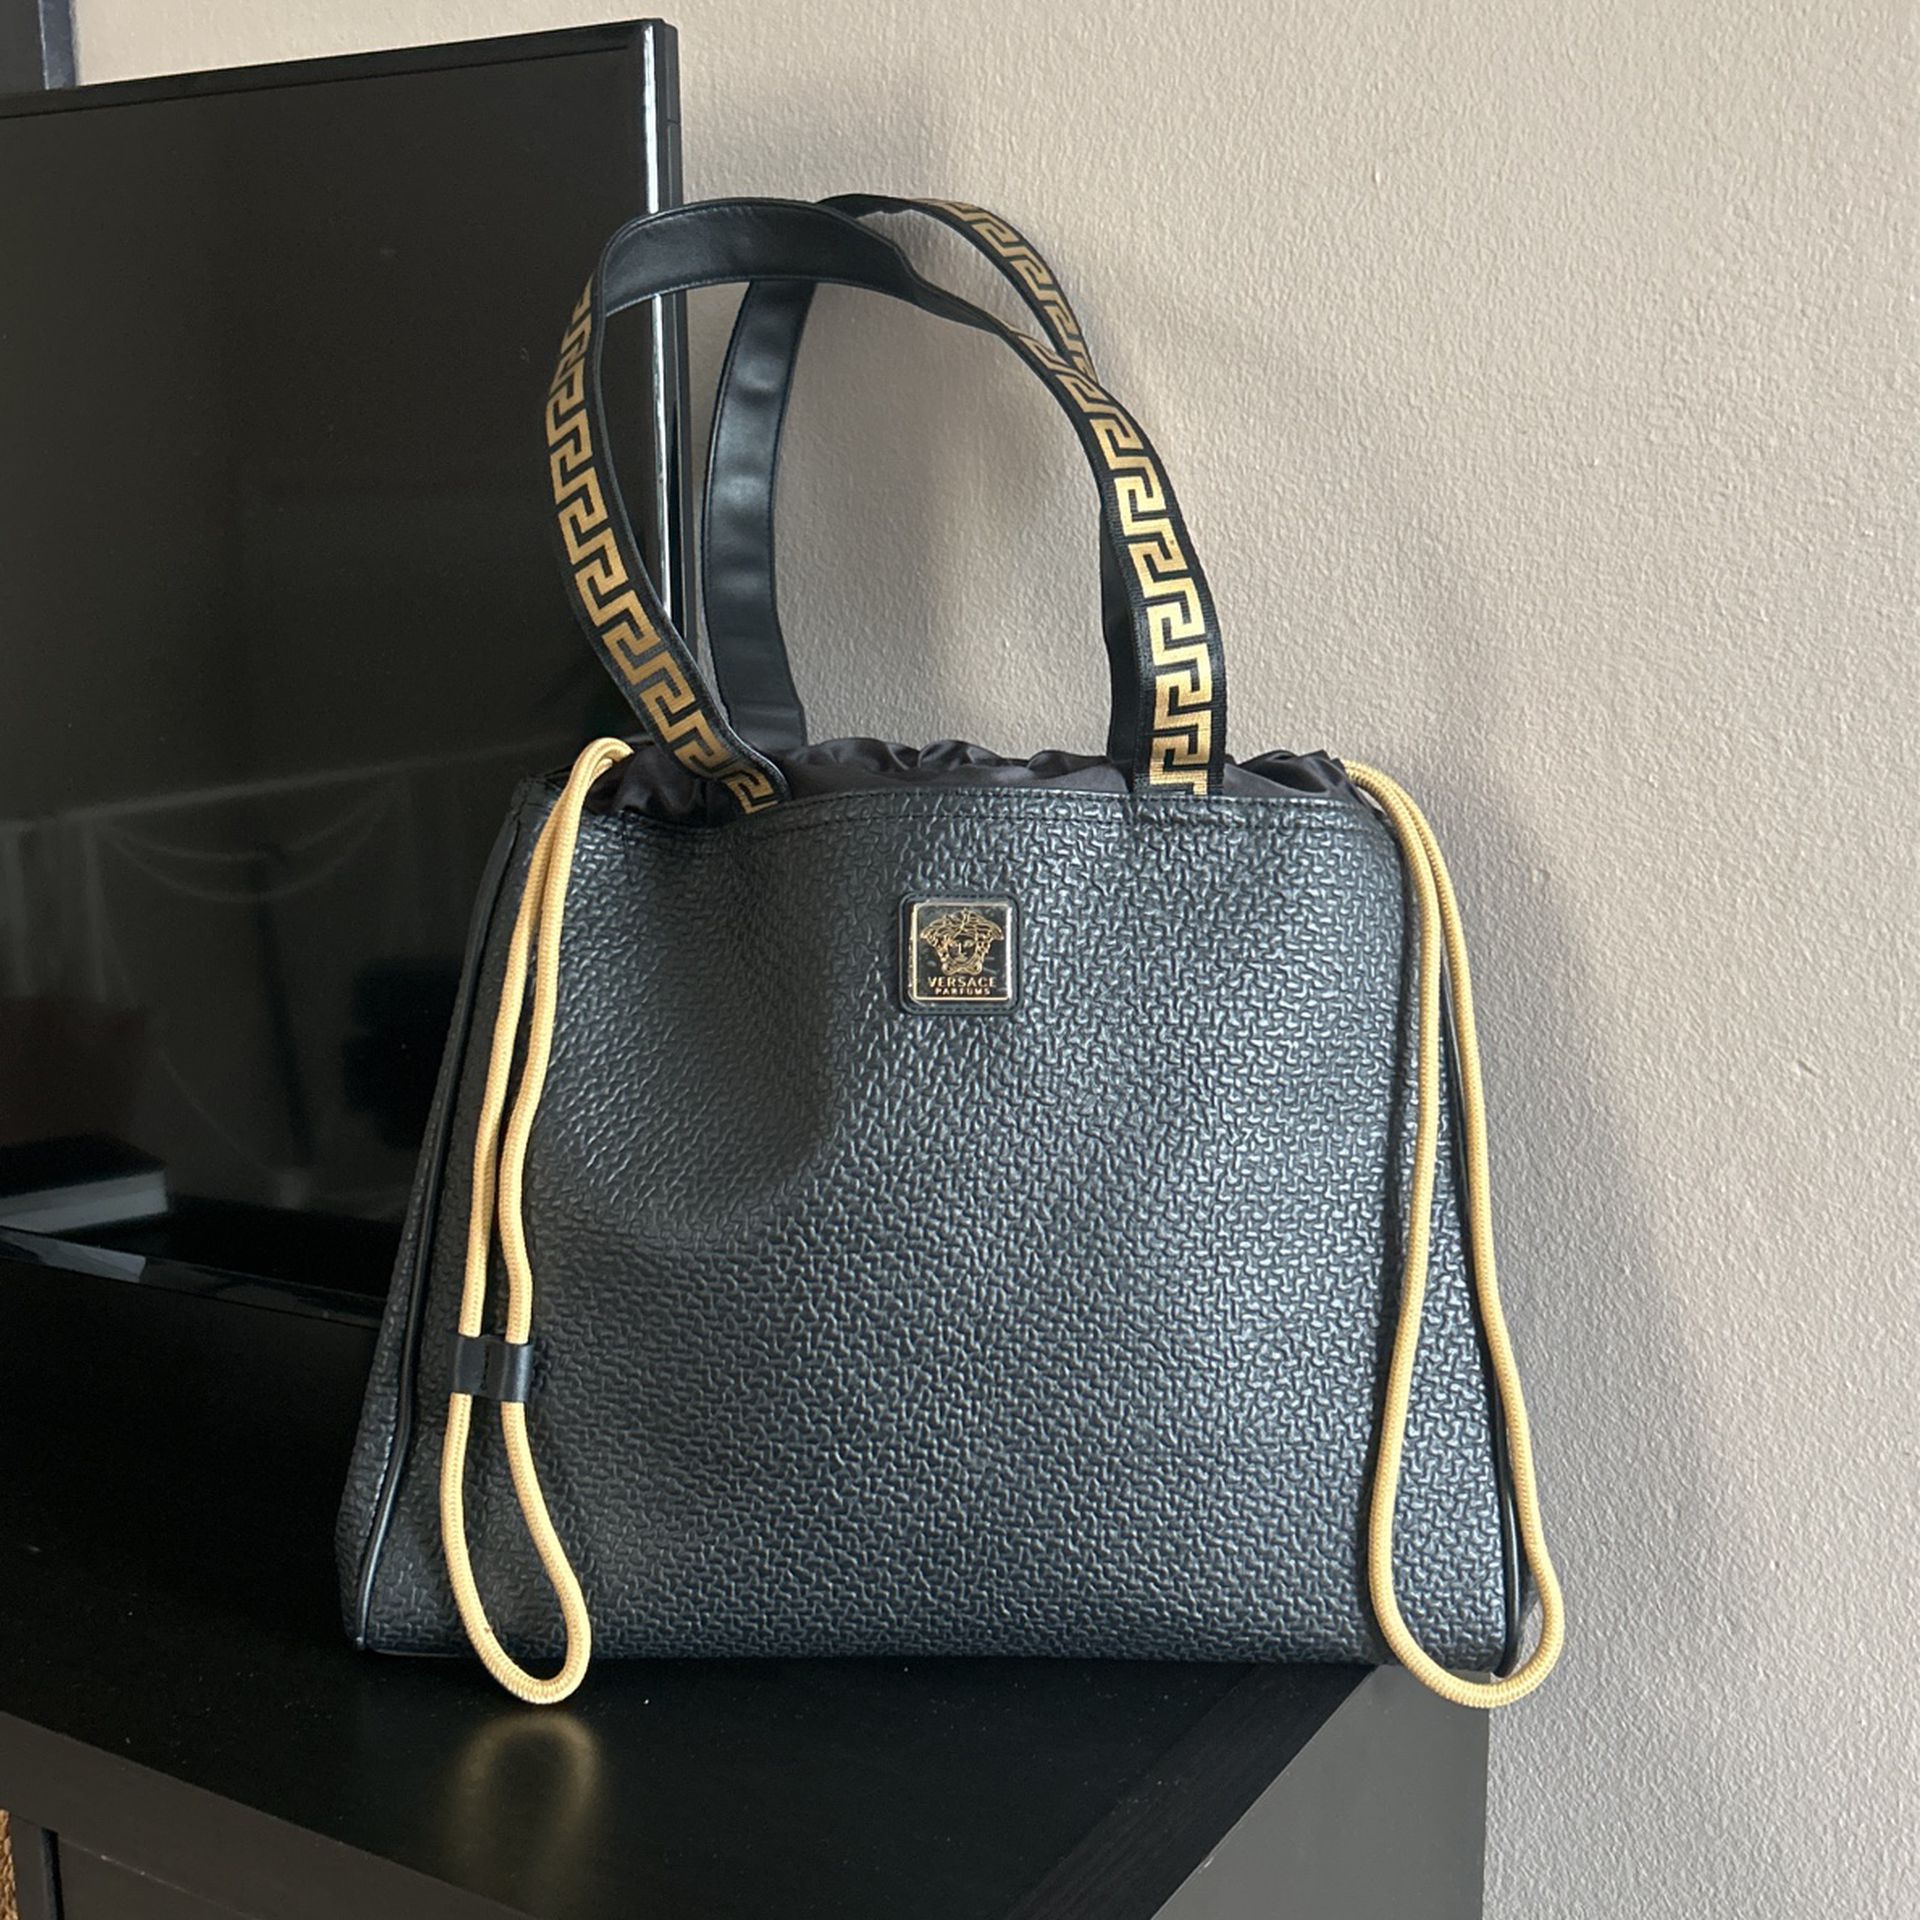 Handbag ,,Versace” black